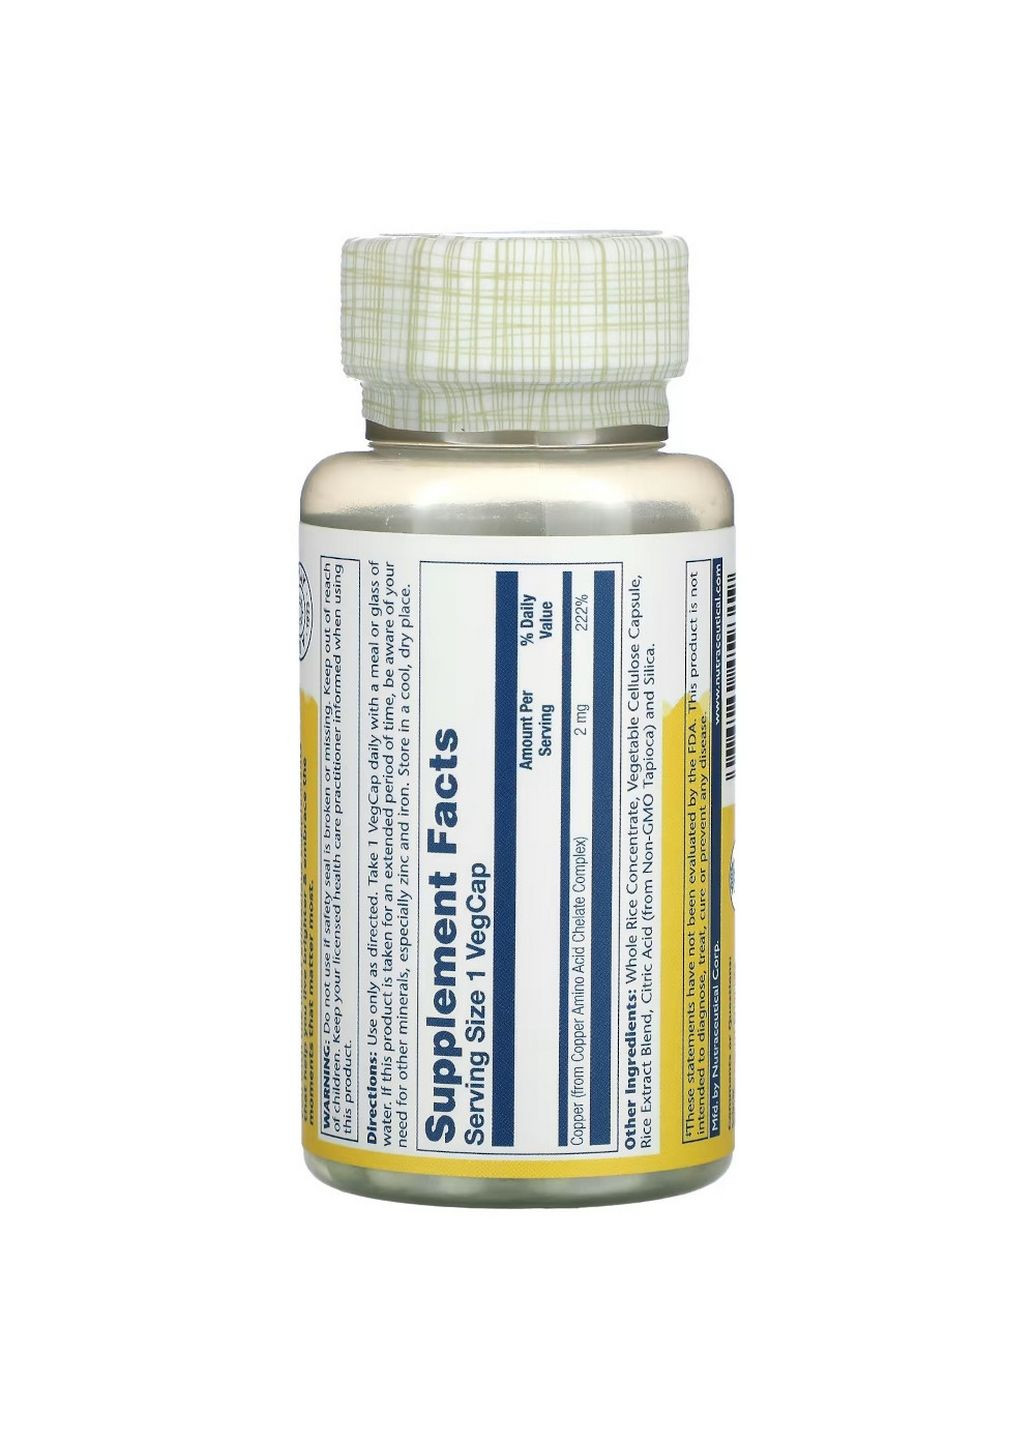 Витамины и минералы Copper 2 mg, 100 капсул Solaray (293416905)